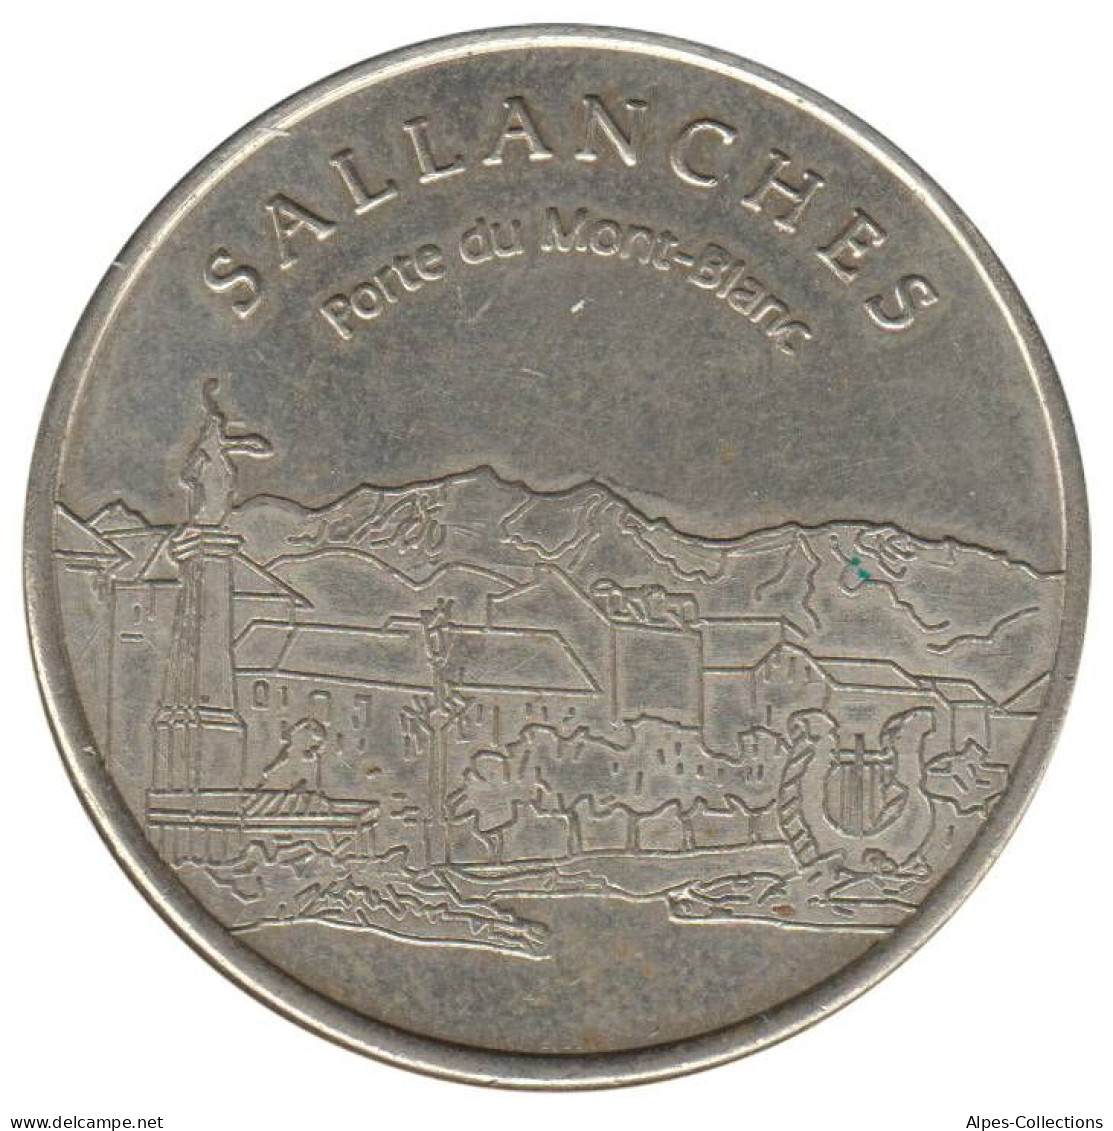 SALLANCHES - EU0020.1 - 2 EURO DES VILLES - Réf: NR - 1998 - Euros De Las Ciudades